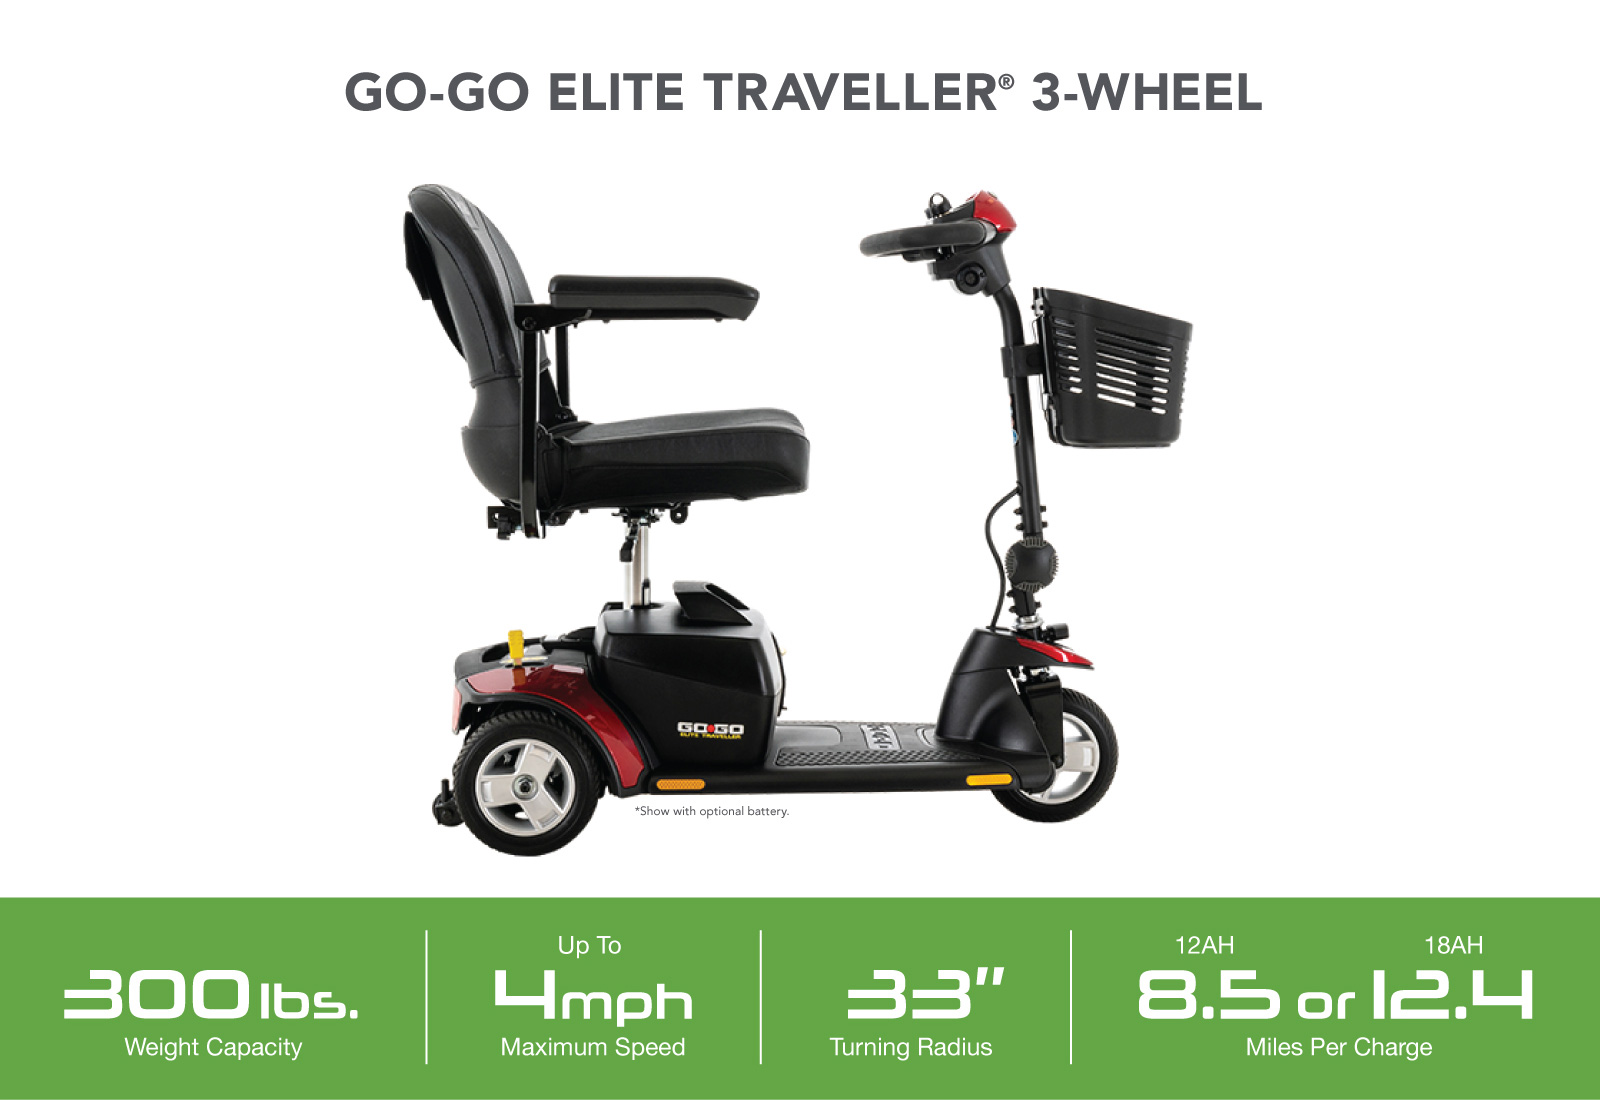 Go-Go Elite Traveller 3-Wheel